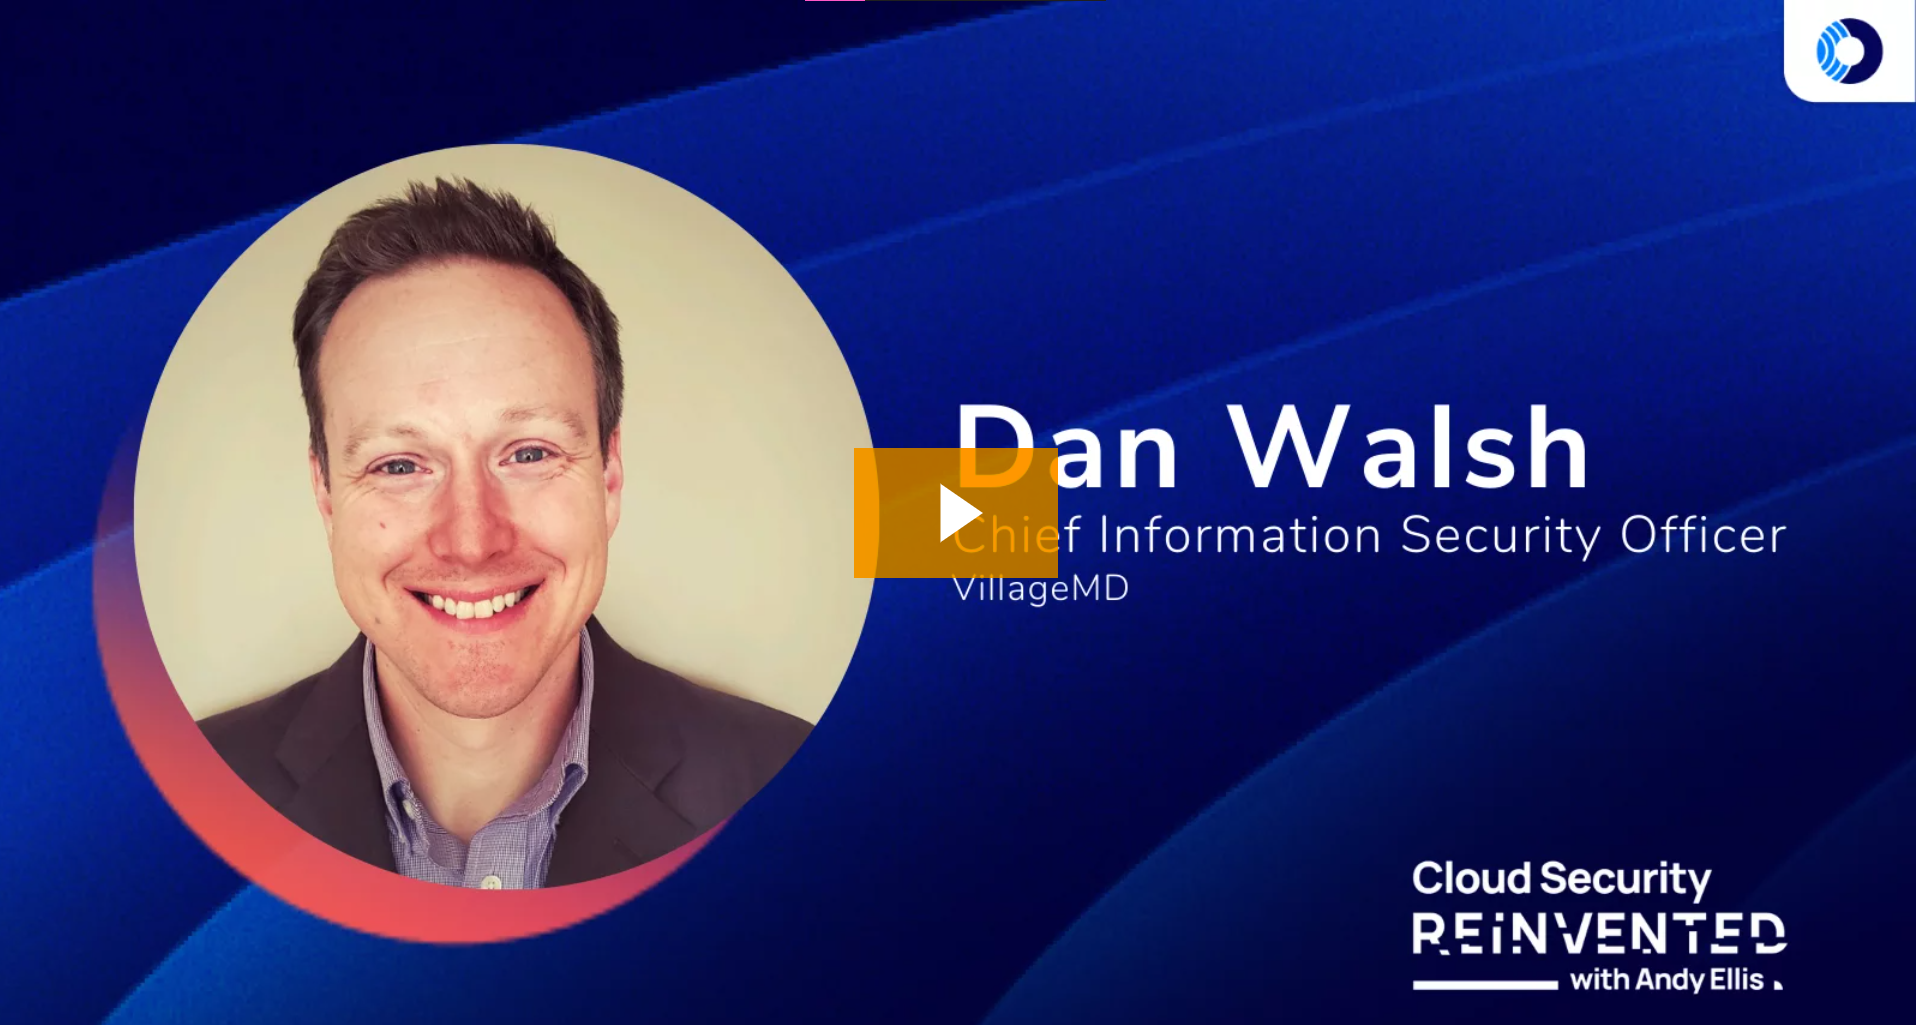 Cloud Security Reinvented: Dan Walsh